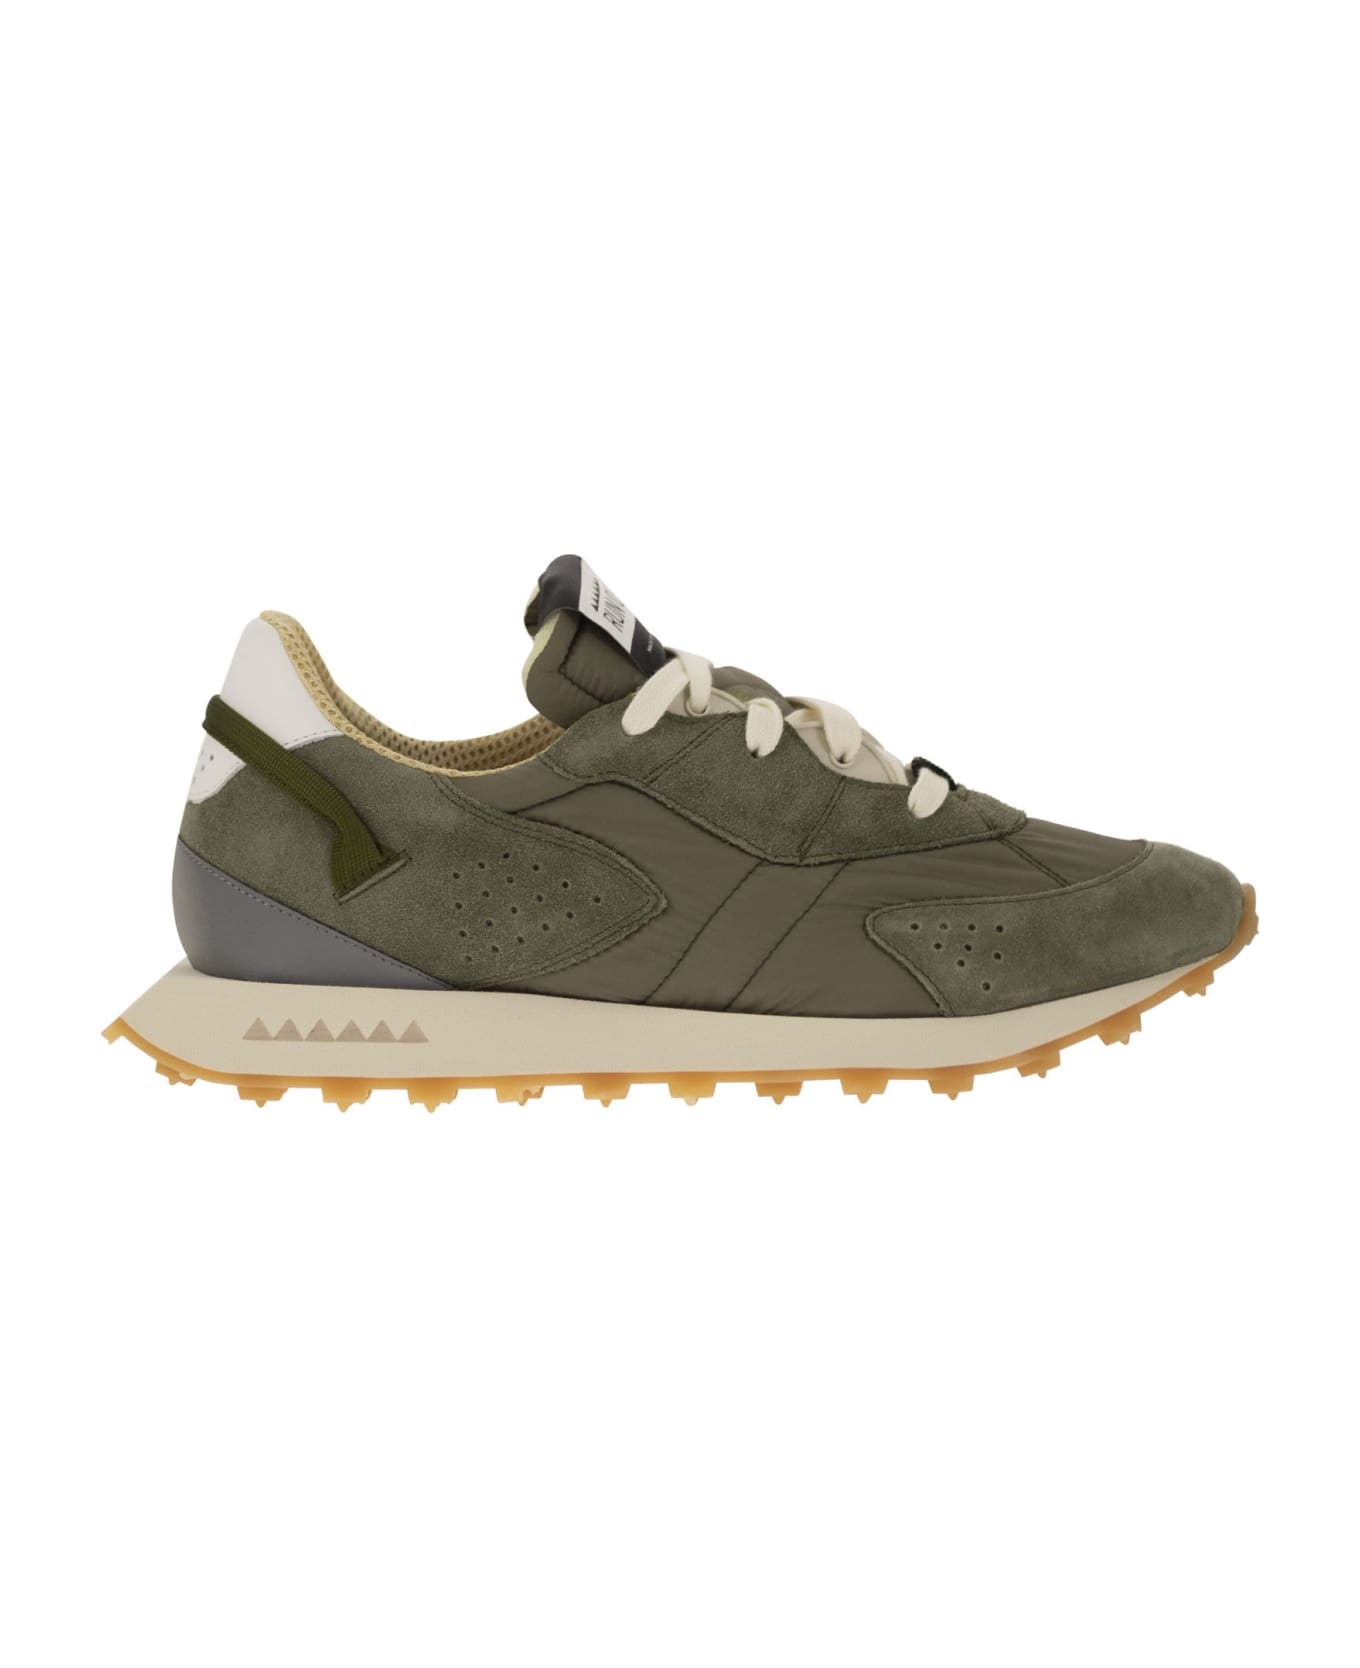 RUN OF Piuma - Sneakers - Military Green